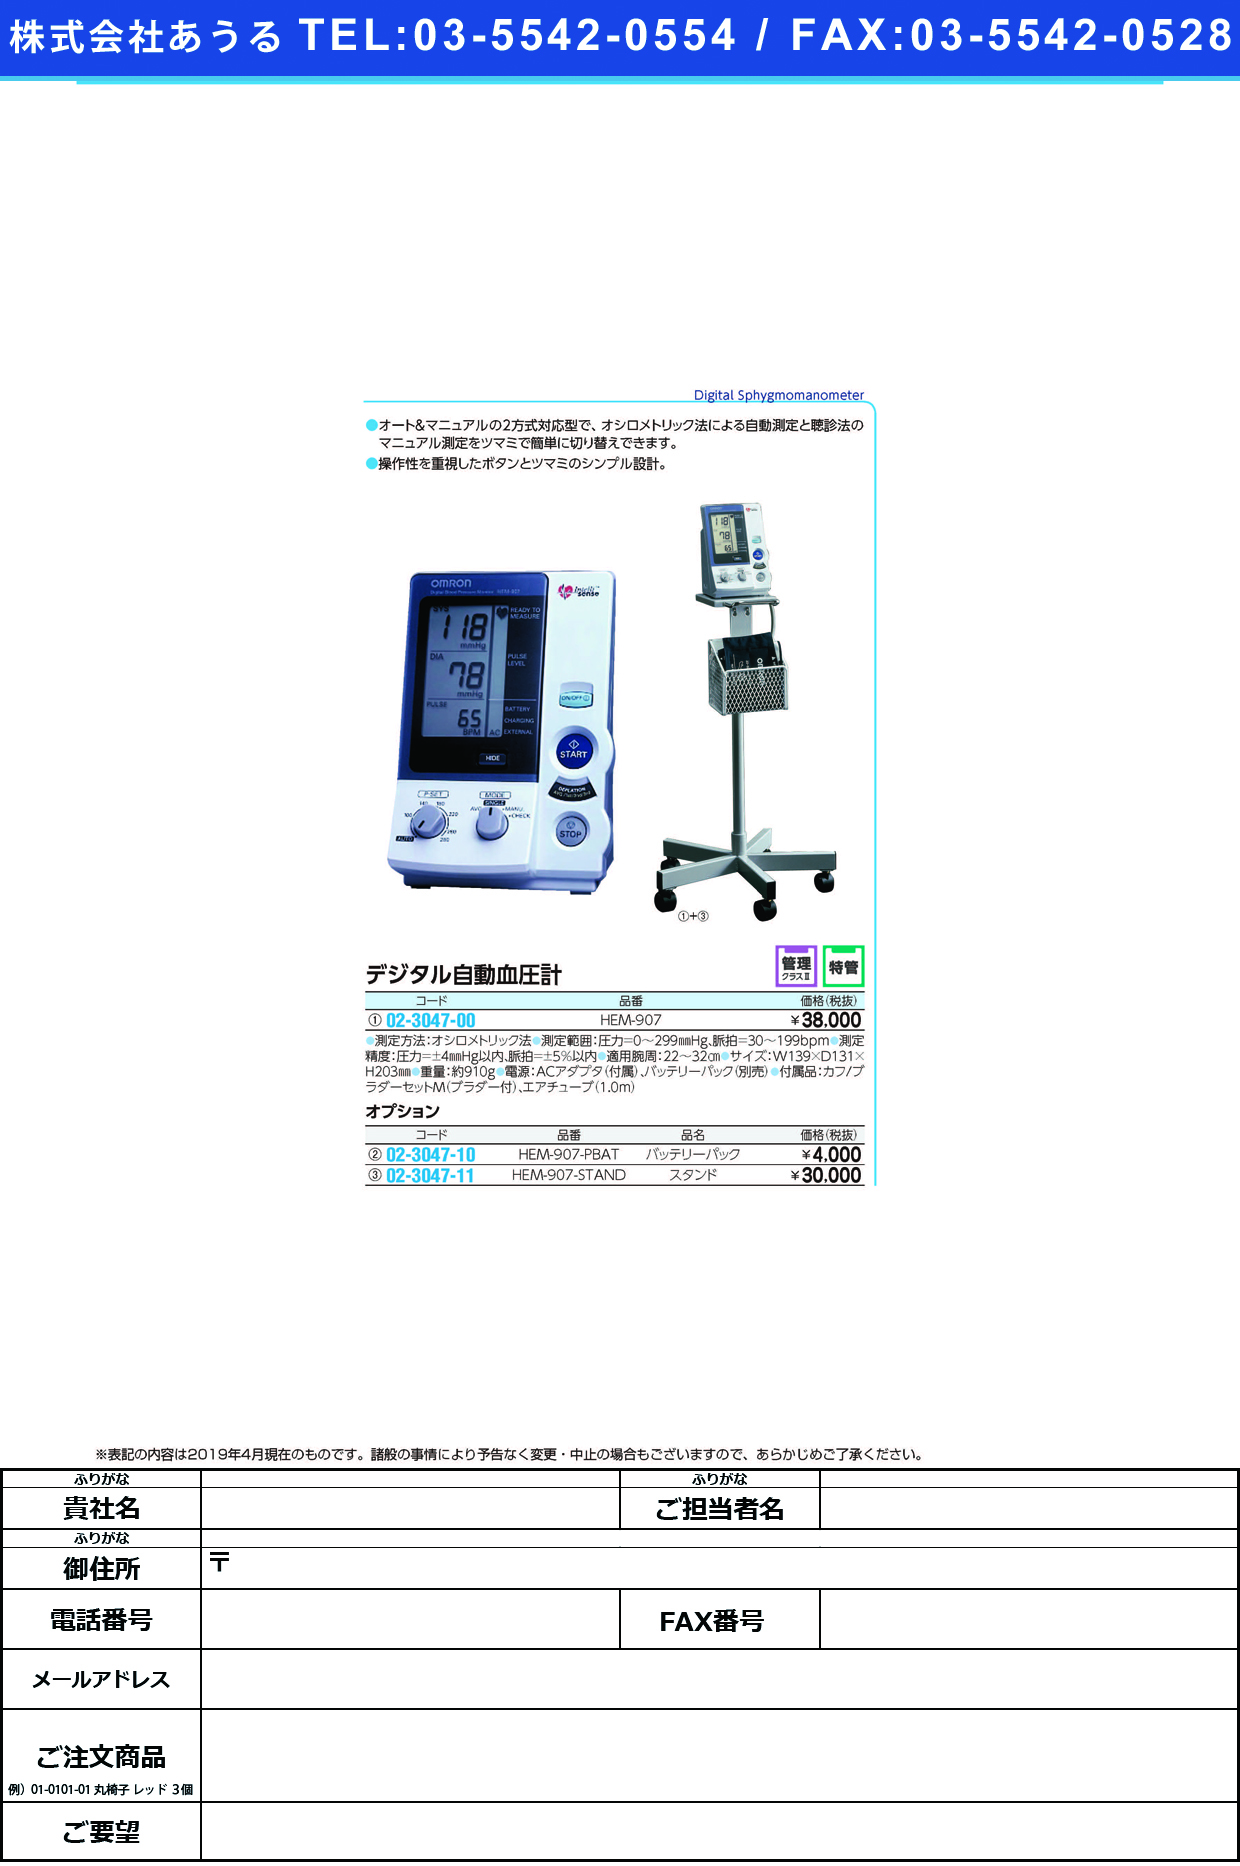 (02-3047-00)デジタル自動血圧計（施設用） HEM-907 ﾃﾞｼﾞﾀﾙｼﾞﾄﾞｳｹﾂｱﾂｹｲｼｾﾂ(フクダコーリン)【1台単位】【2019年カタログ商品】